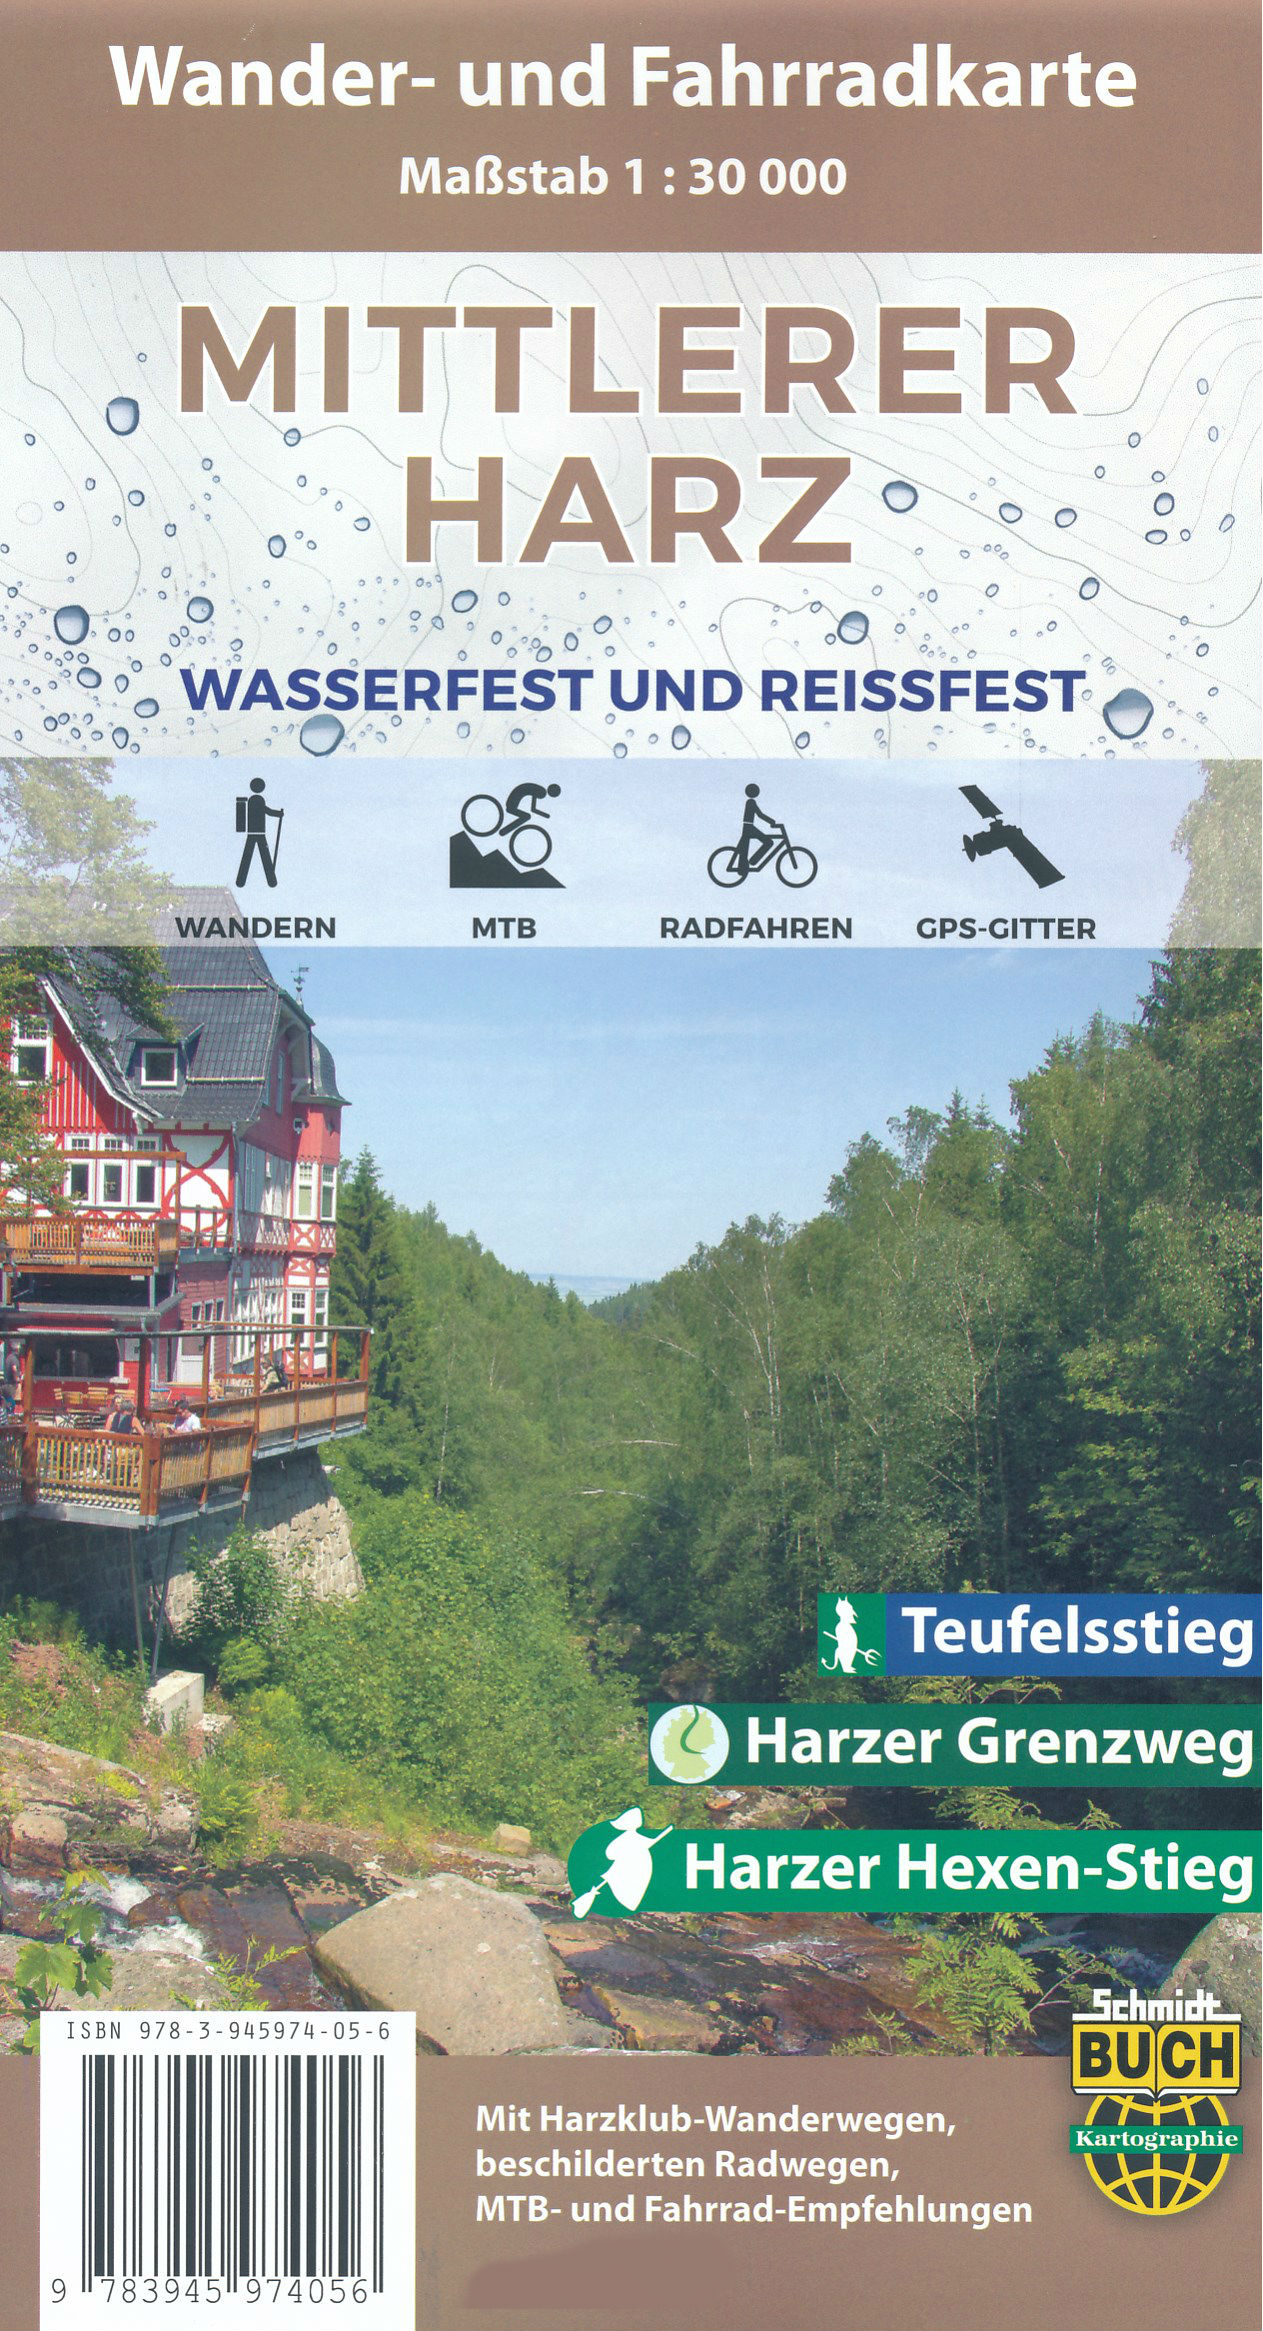 Online bestellen: Wandelkaart - Fietskaart Der mittlere Harz | Schmidt Buch Verlag